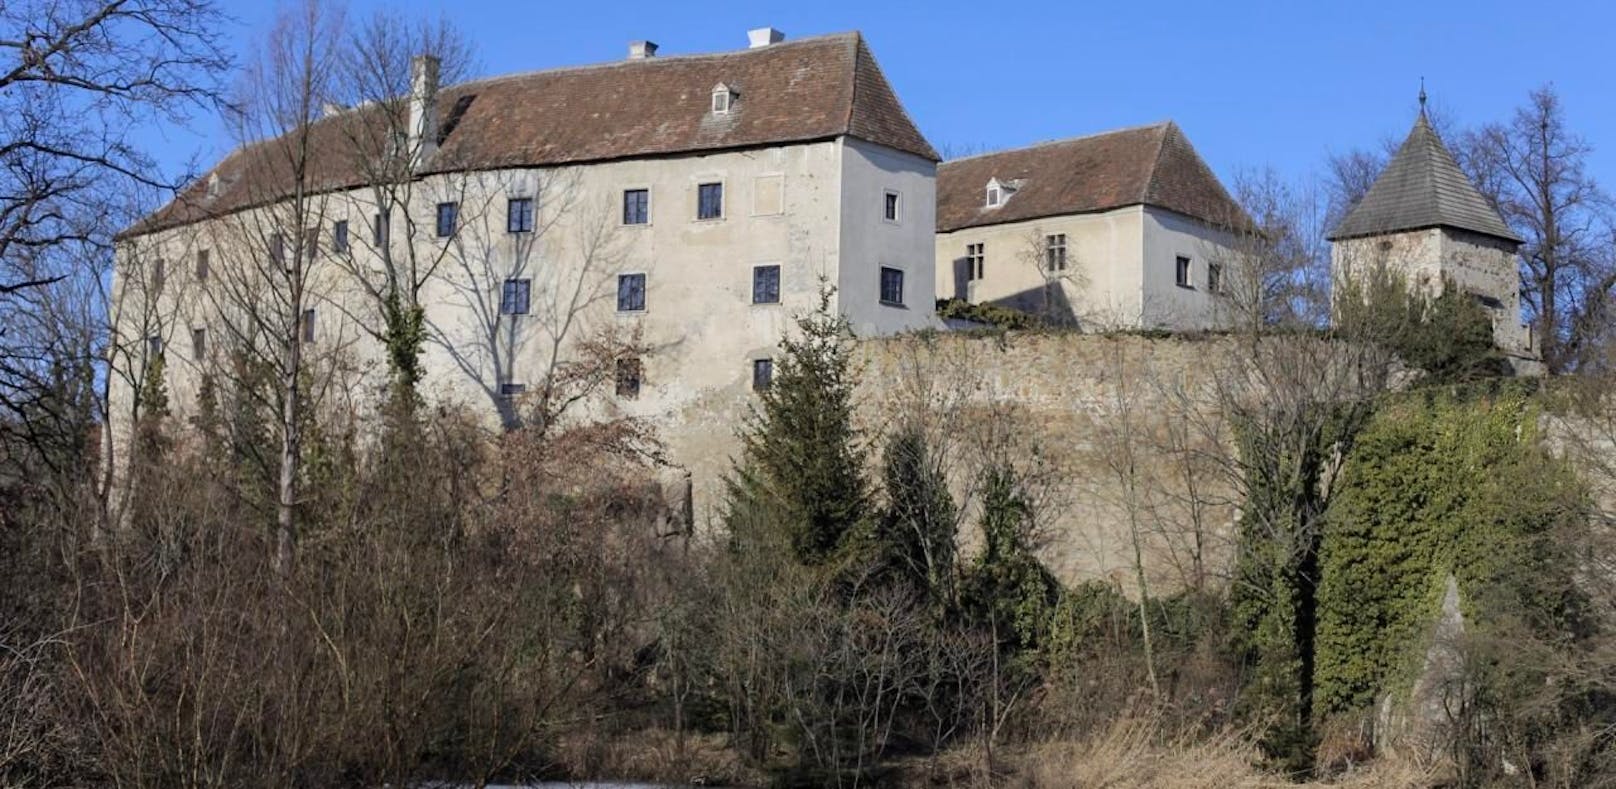 Das Schloss Burgschleinitz am Dienstag.